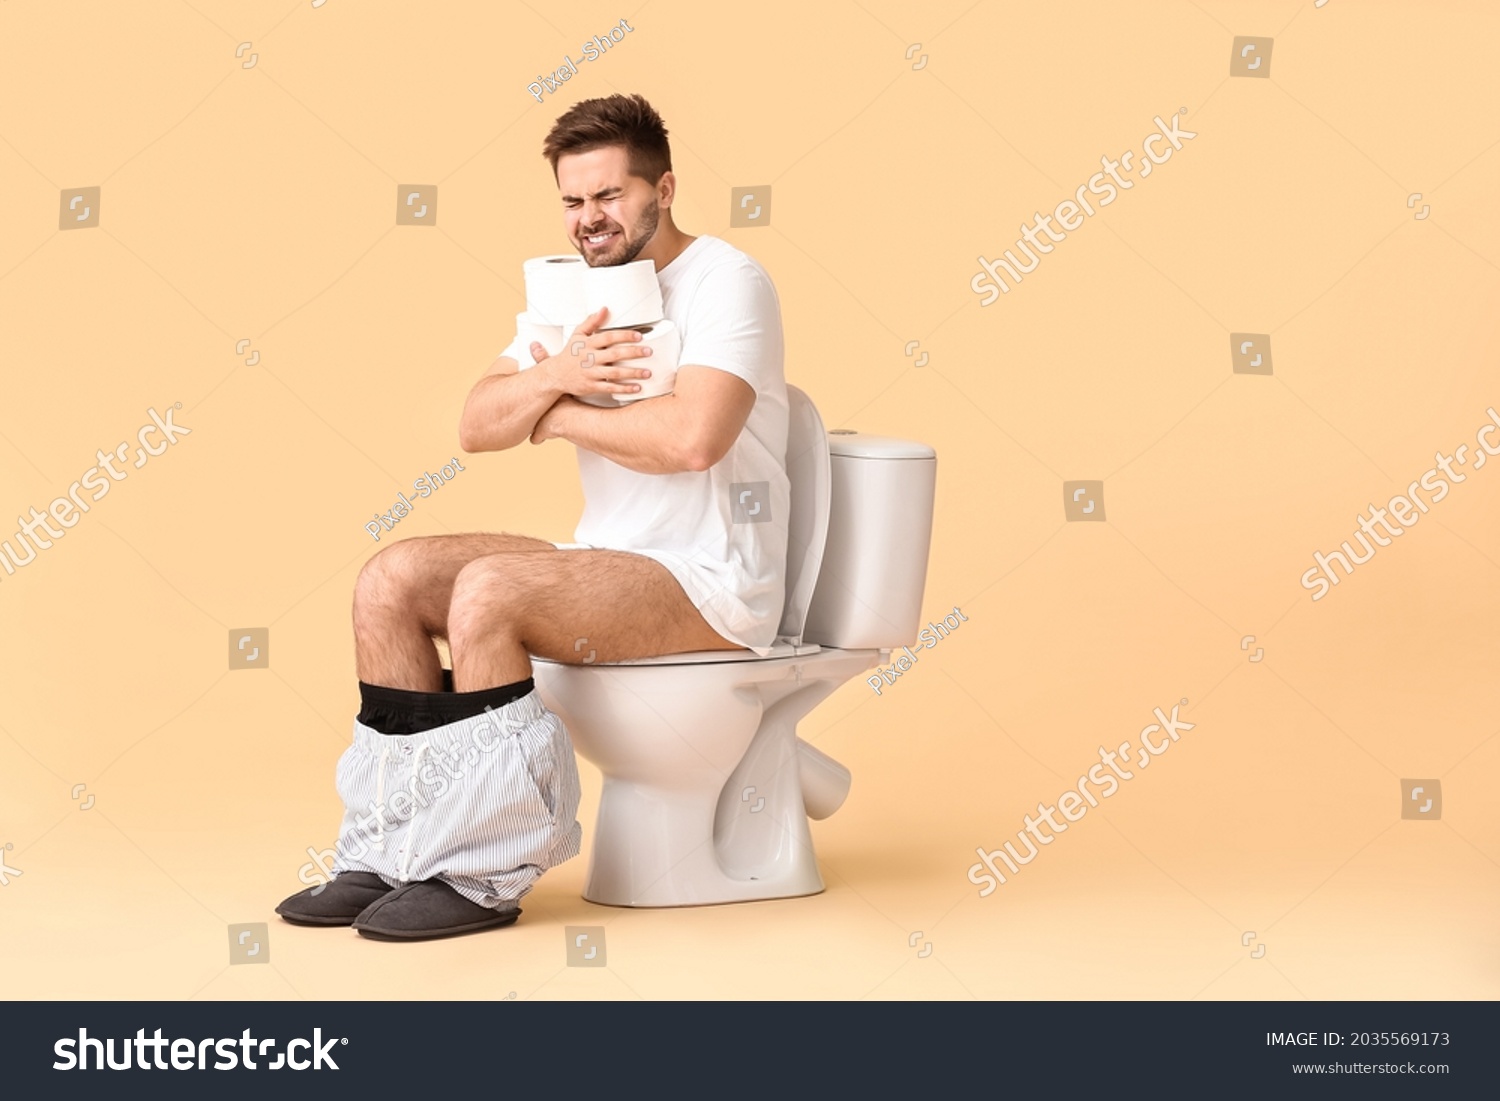 Макрон на унитазе. Мужчина в туалете.